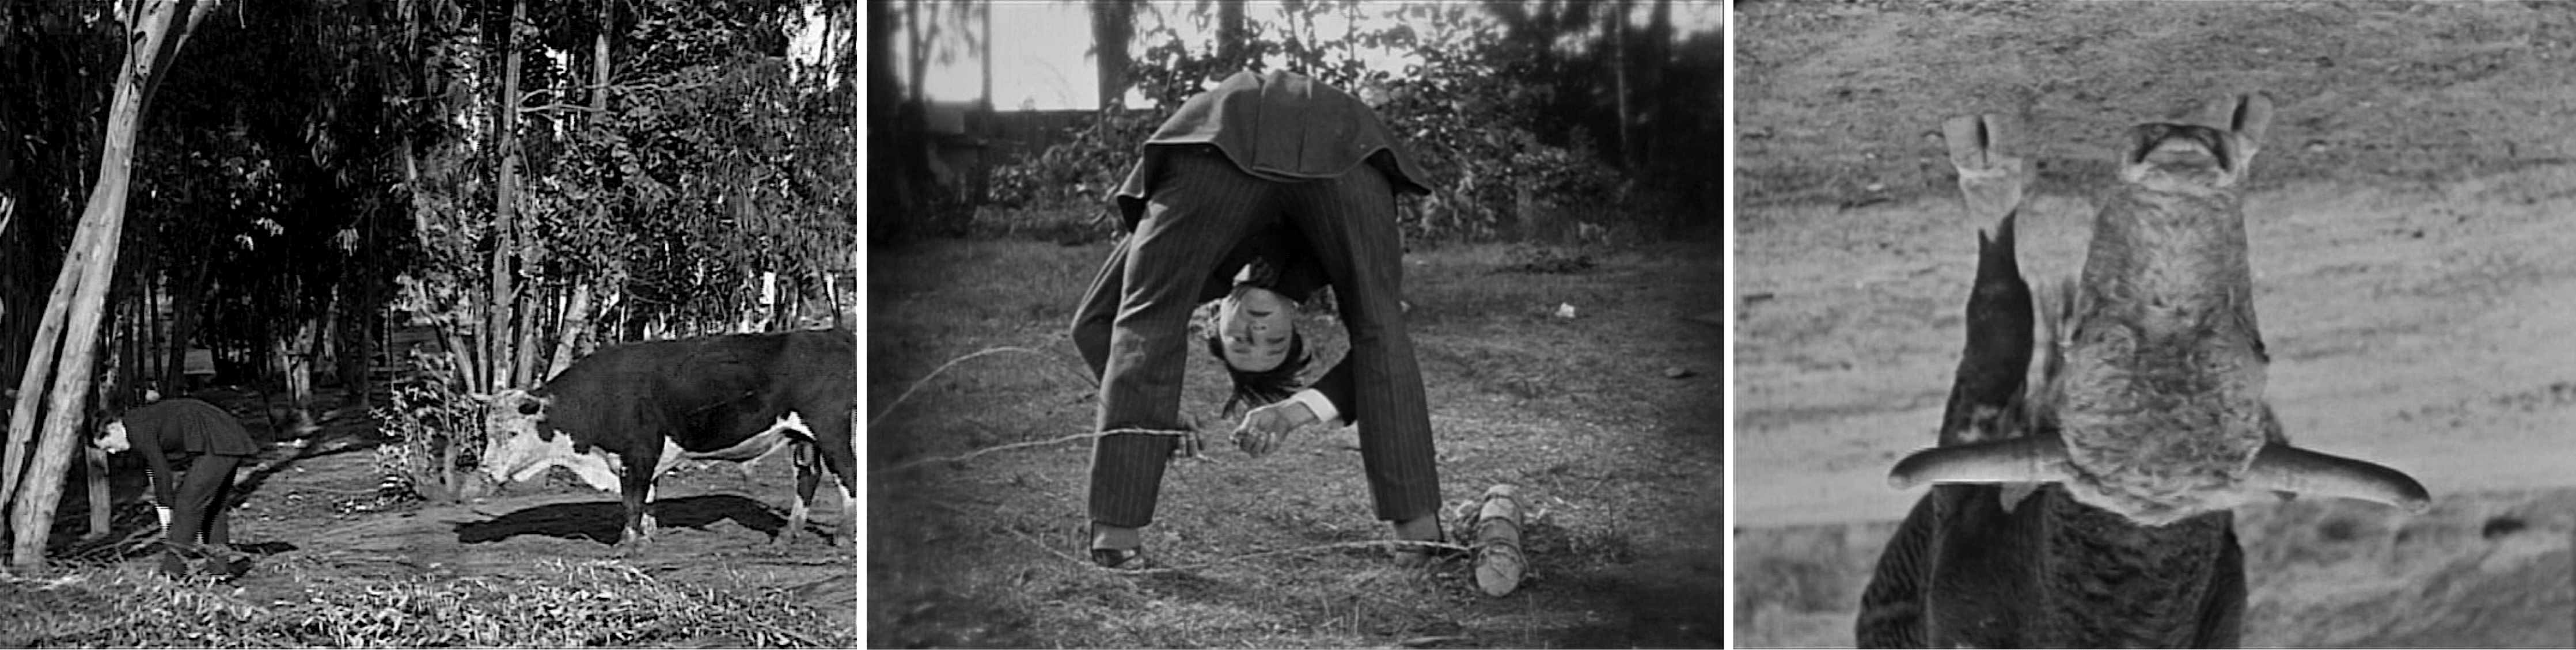 Les Fiancées en folie (Seven Chances, 1925) de Buster Keaton, édité en vidéo par Elephant Films et MK2.